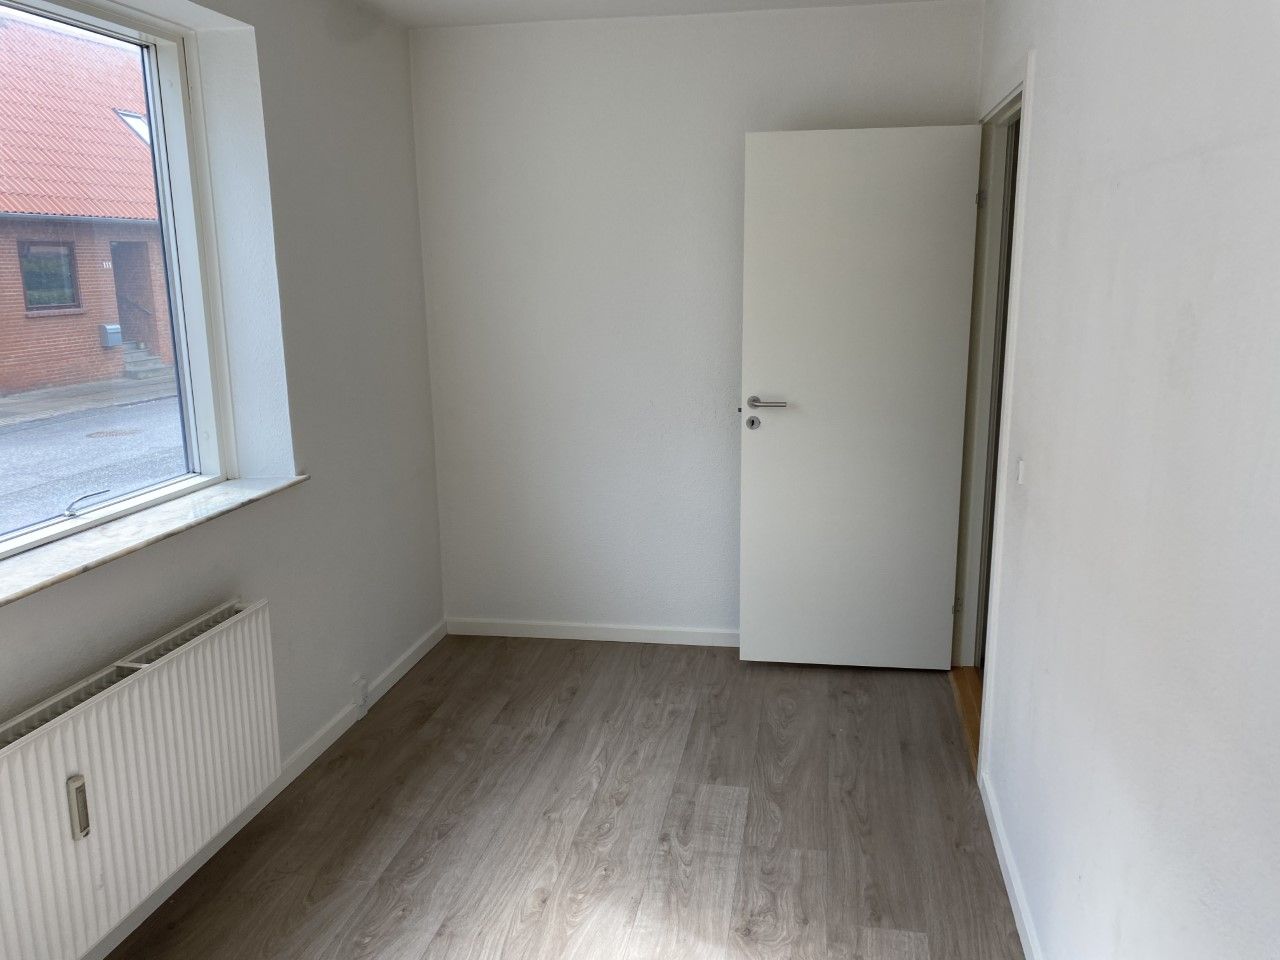 2 værelses lejlighed i Horsens 8700 på 59 kvm